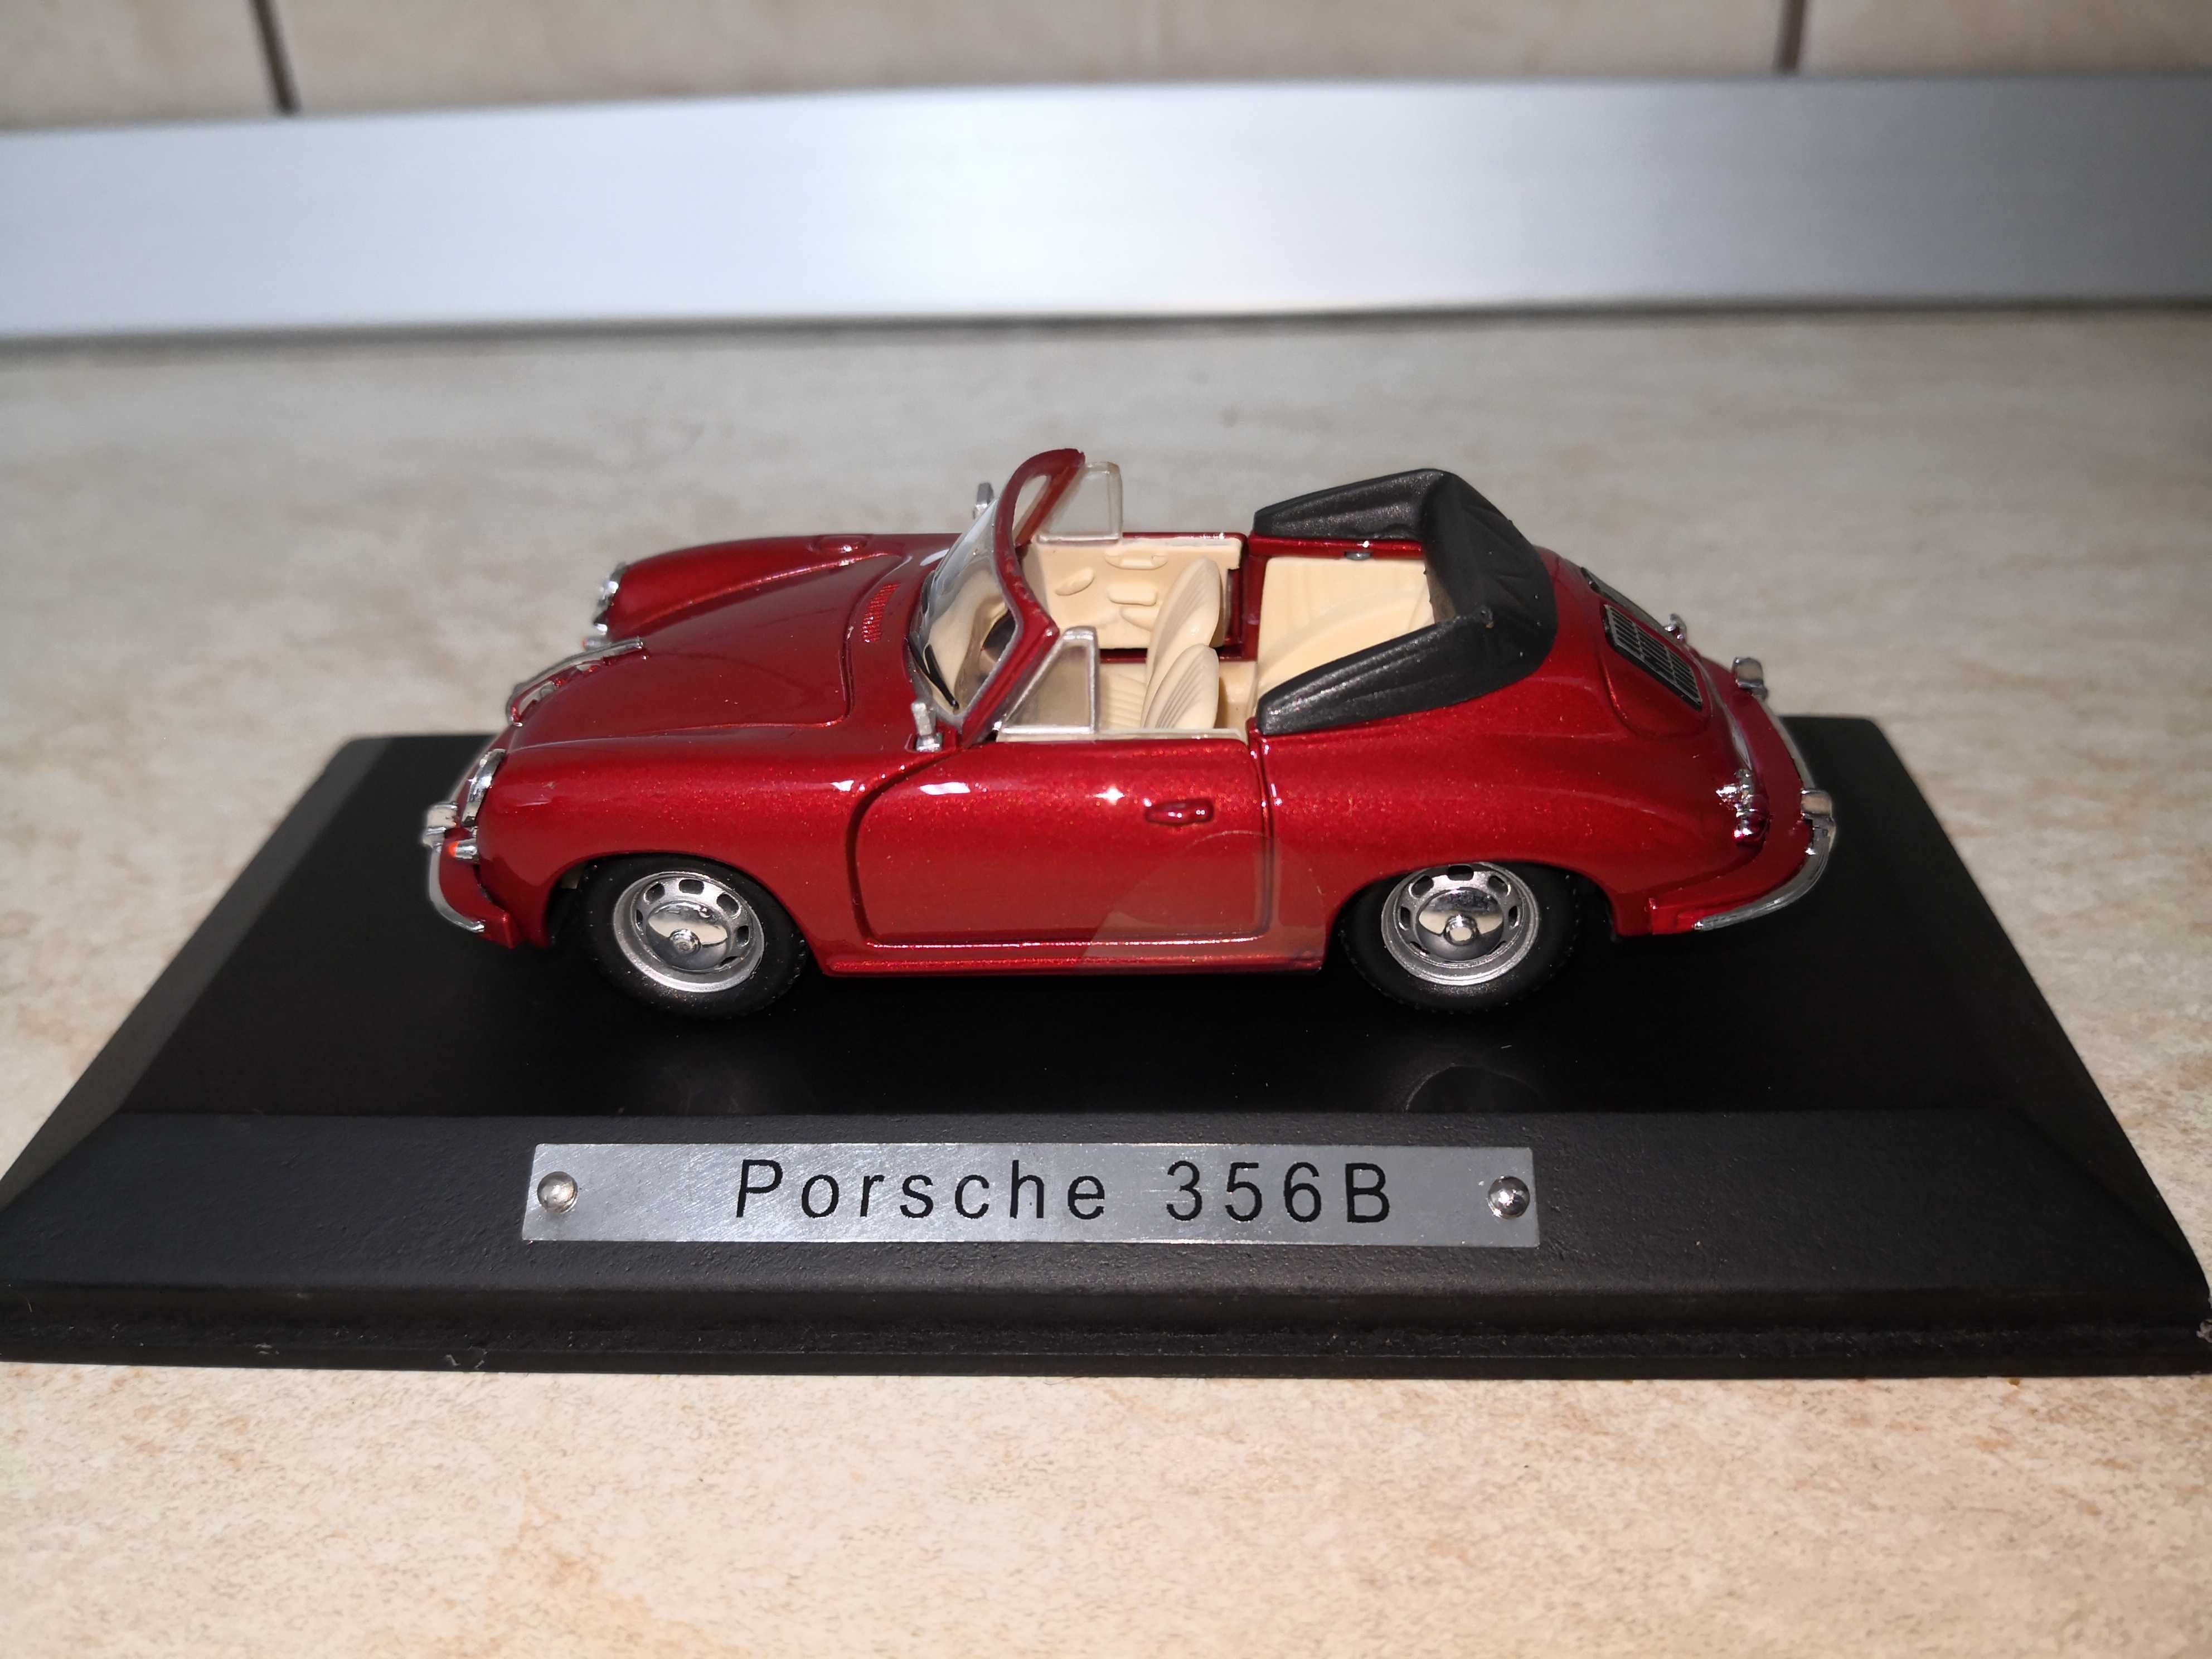 Porsche 356B, Atlas, scara 1:43, macheta metalica